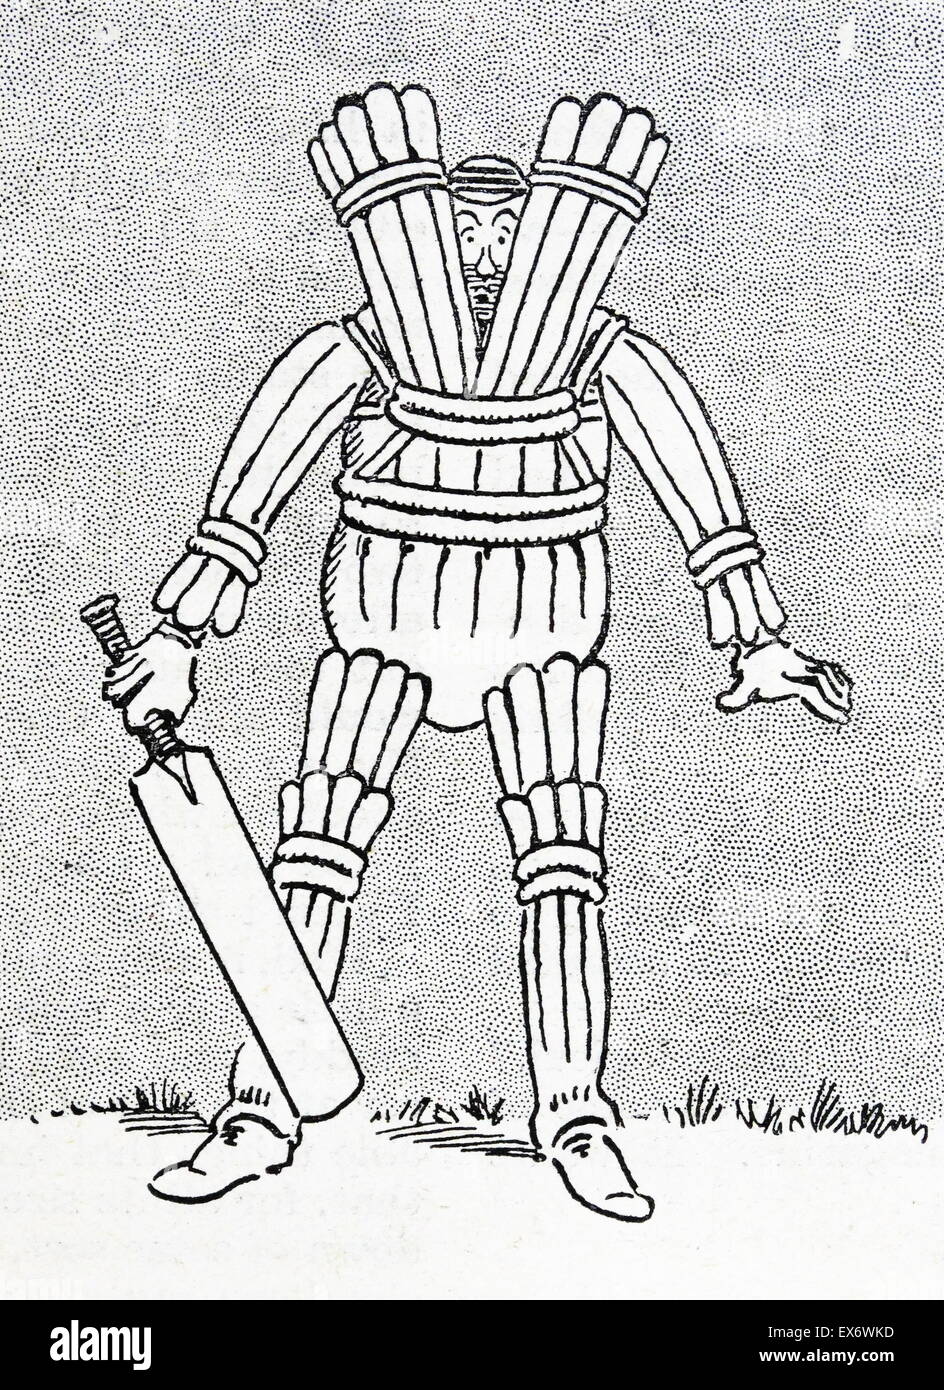 Cartoon über gepolsterte Cricketspieler fördert die Sicherheit im Cricket 1938 Stockfoto